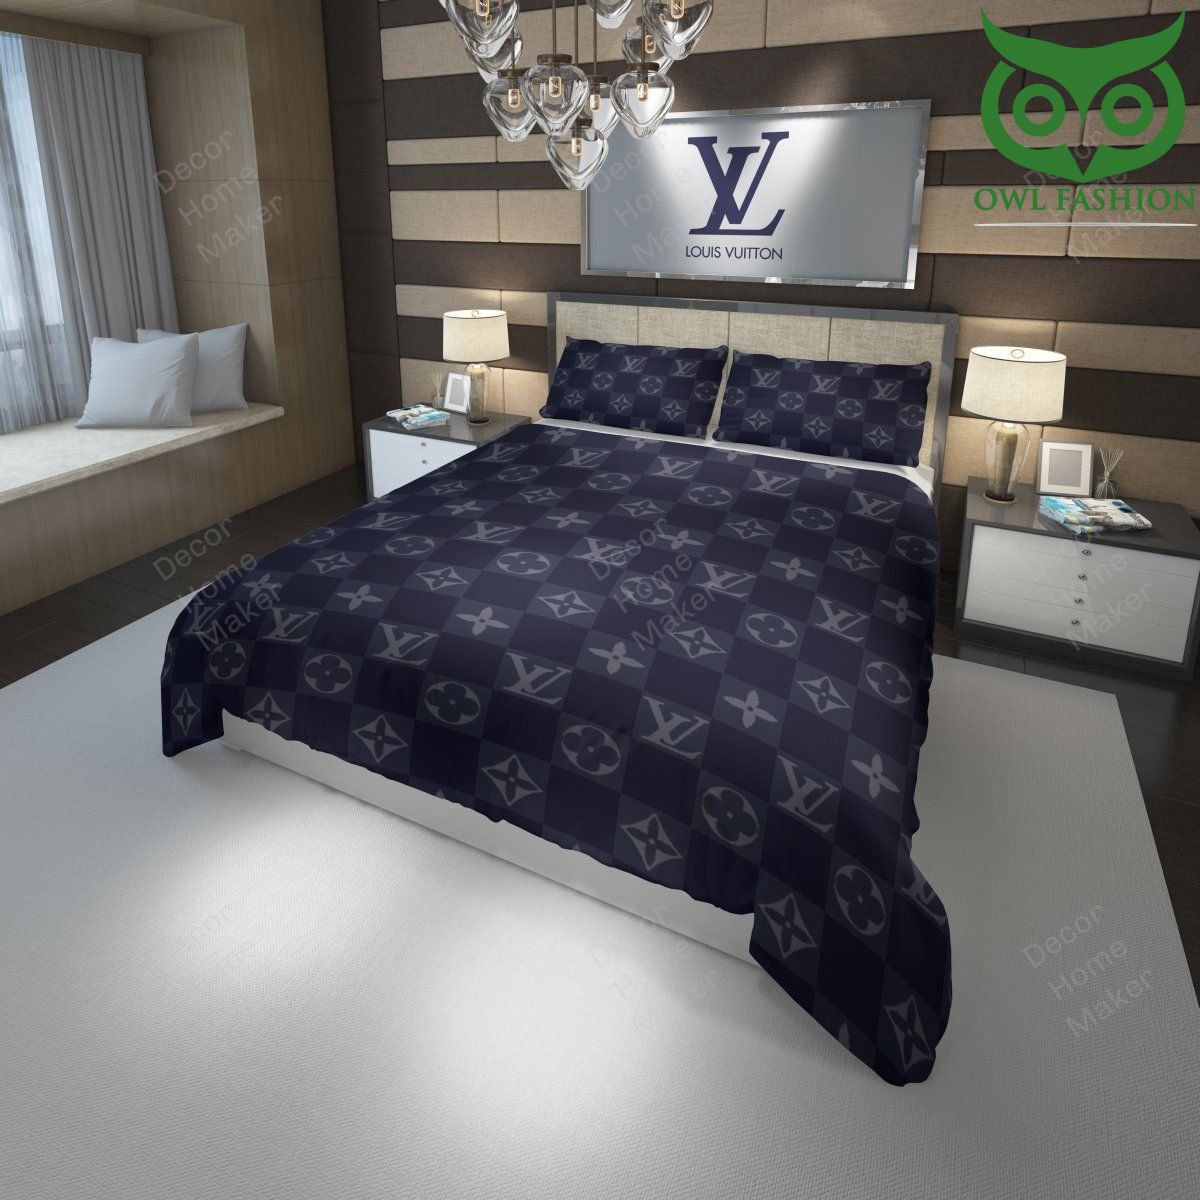 40 Louis Vuitton navy caro pattern luxury bedding set